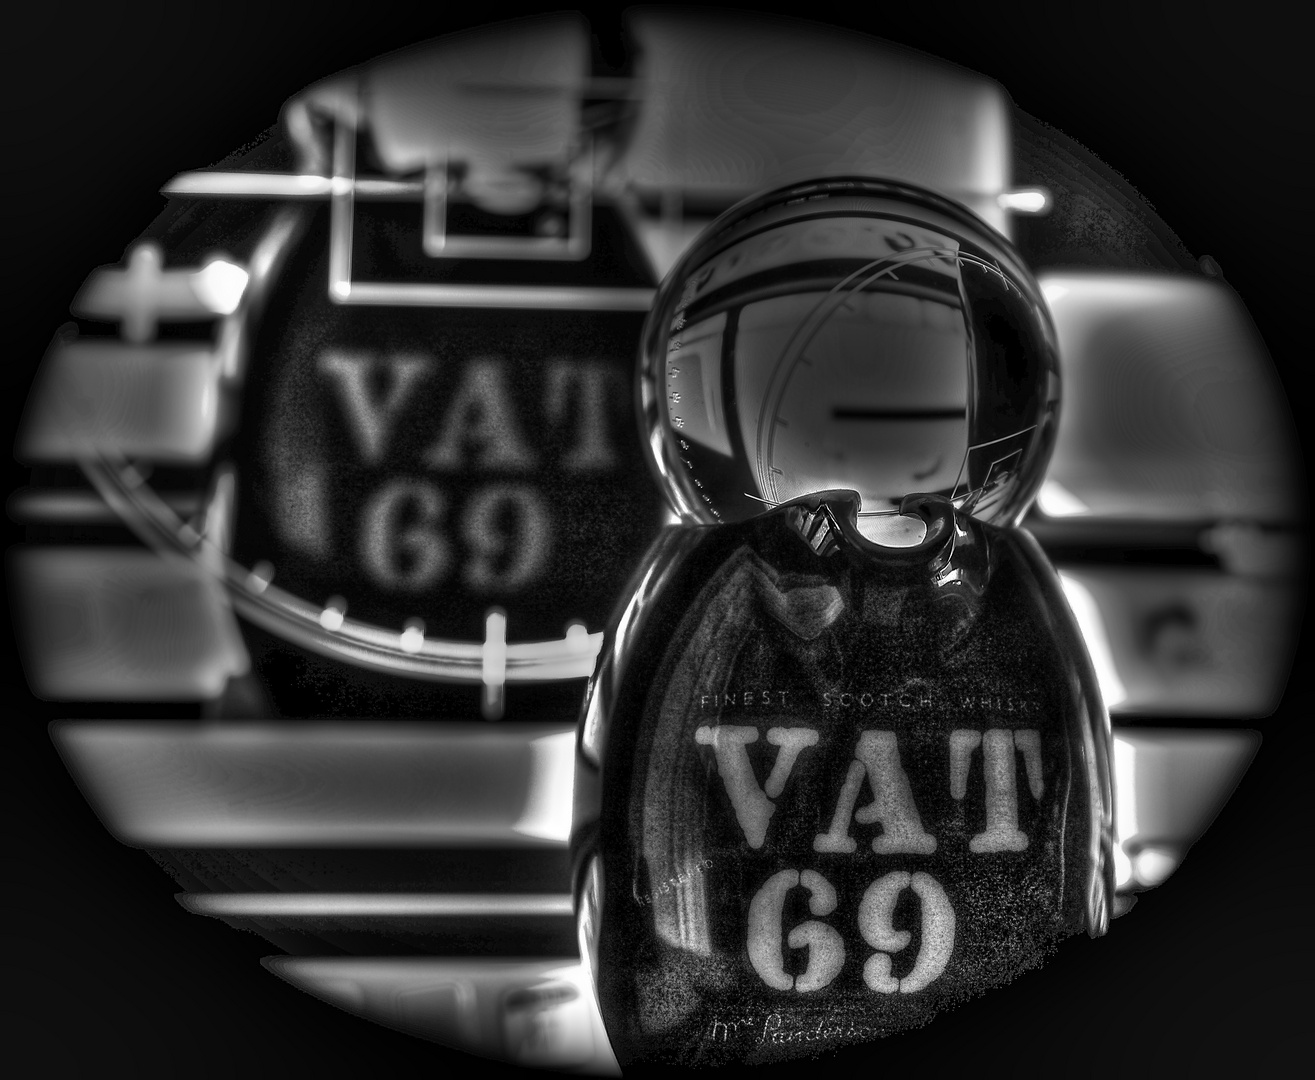  VAT 69 